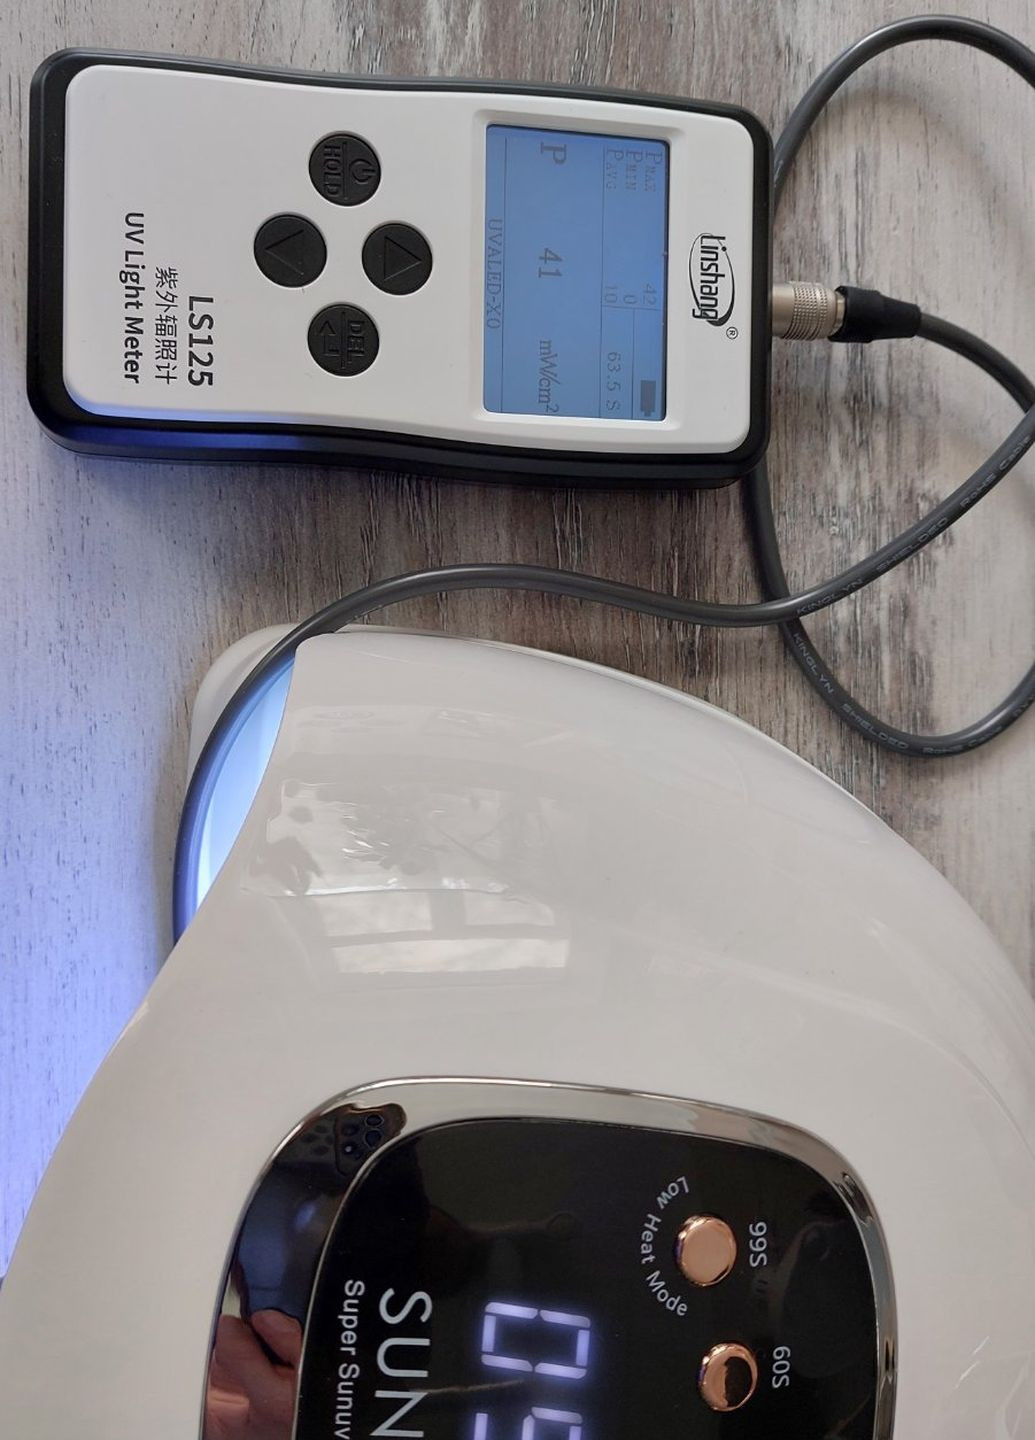 Профессиональная LED+UV лампа для маникюра и наращивания ногтей х 66 LED 180 W белая Sun 15 max (264831945)